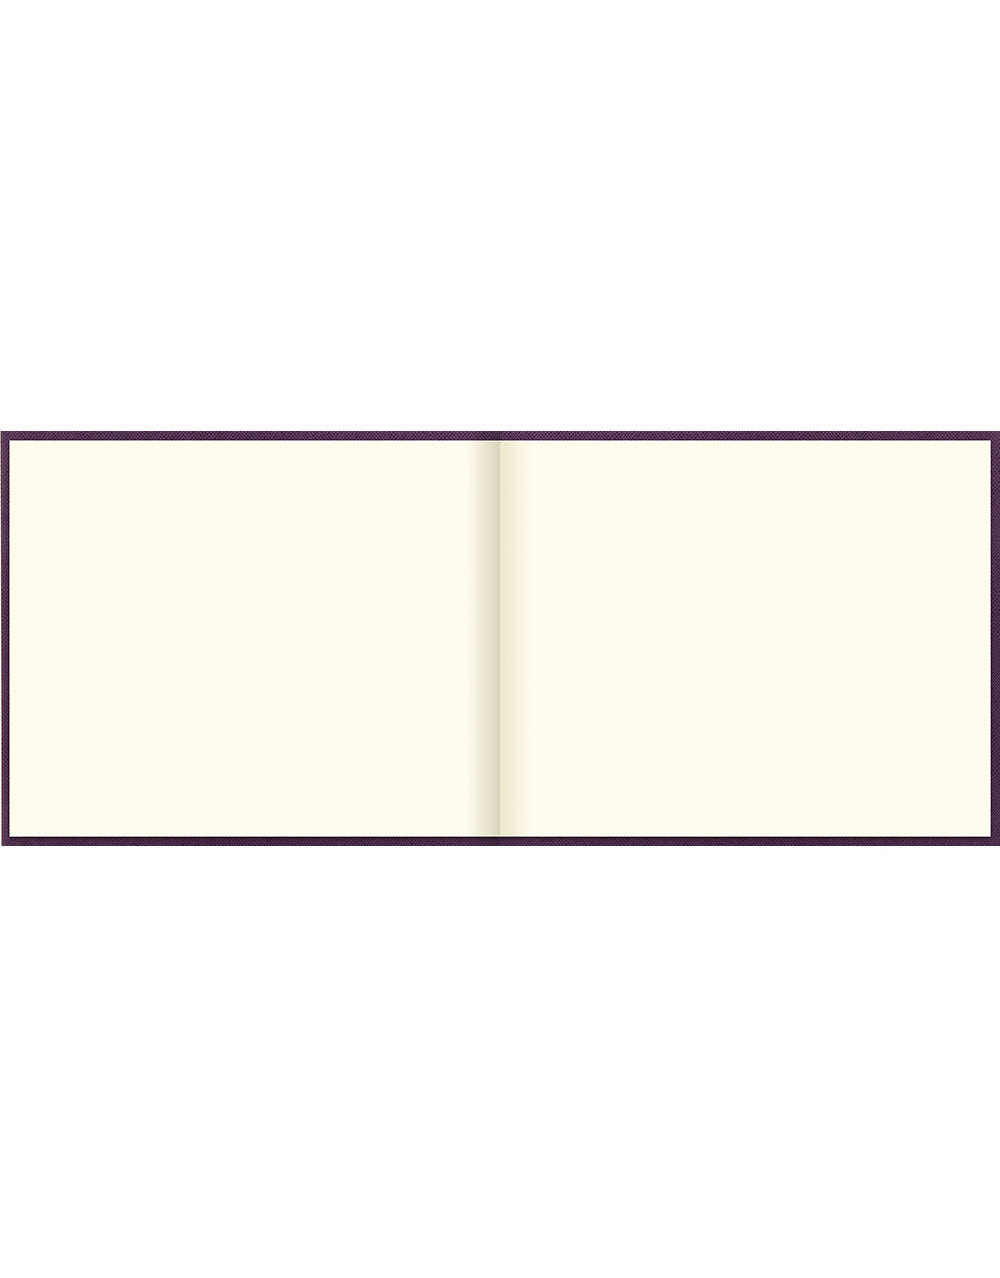 Legacy Quarto Landscape Plain Guest Book Purple Inside#colour_purple